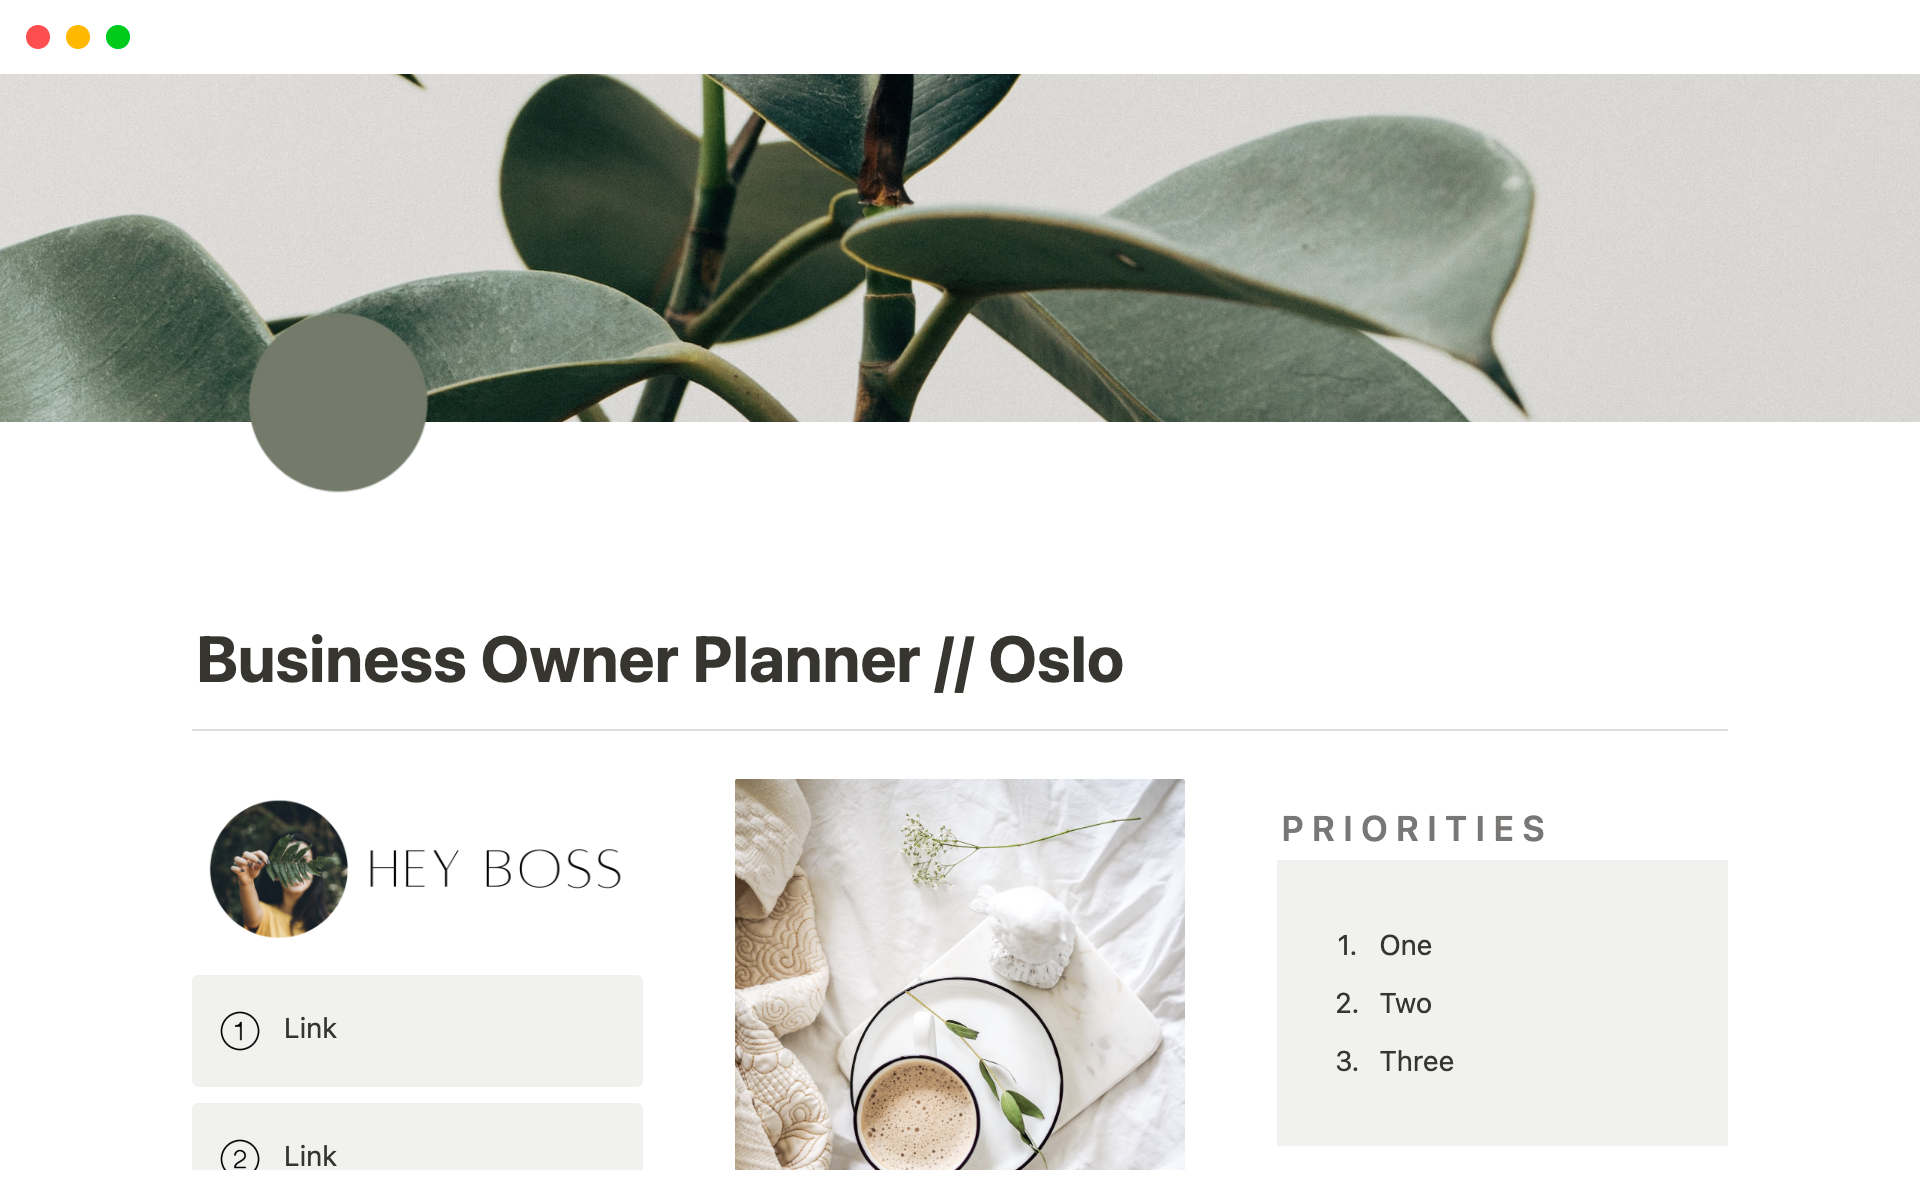 Vista previa de una plantilla para Business Owner Planner